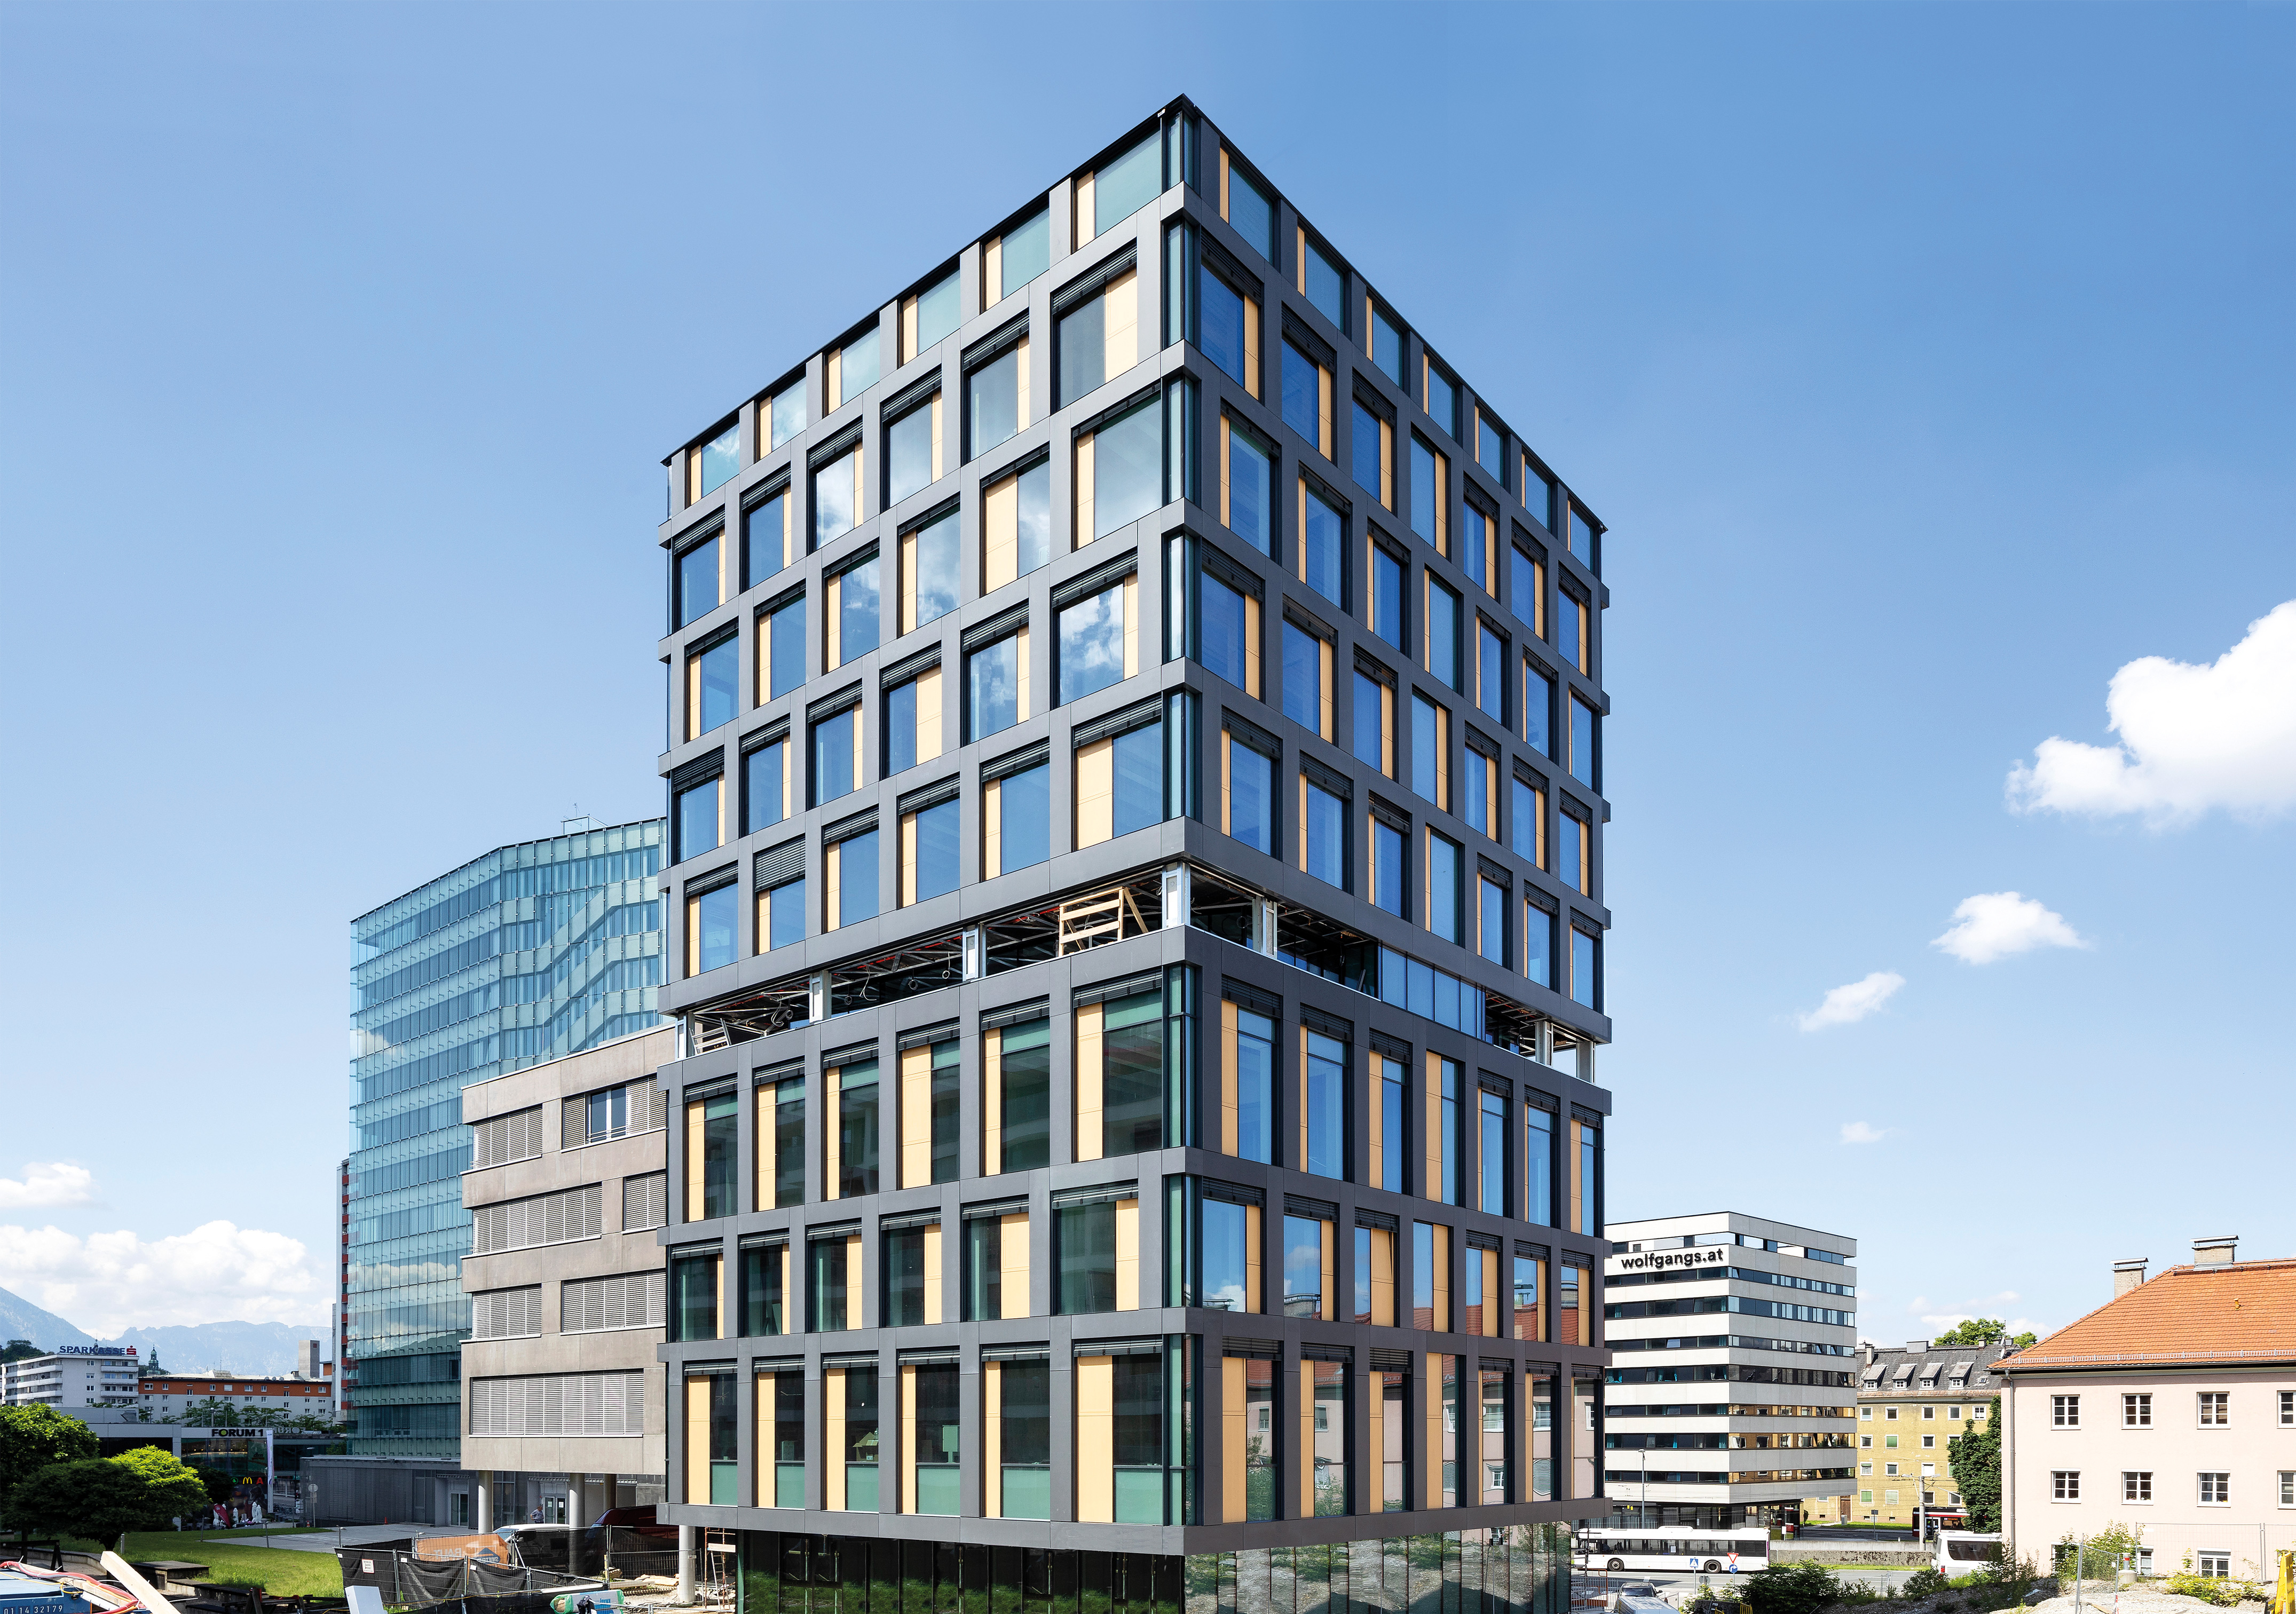 Bürogebäude der österreichischen Gesundheitskasse in Holz-/Hybridbauweise, Salzburg - Building construction